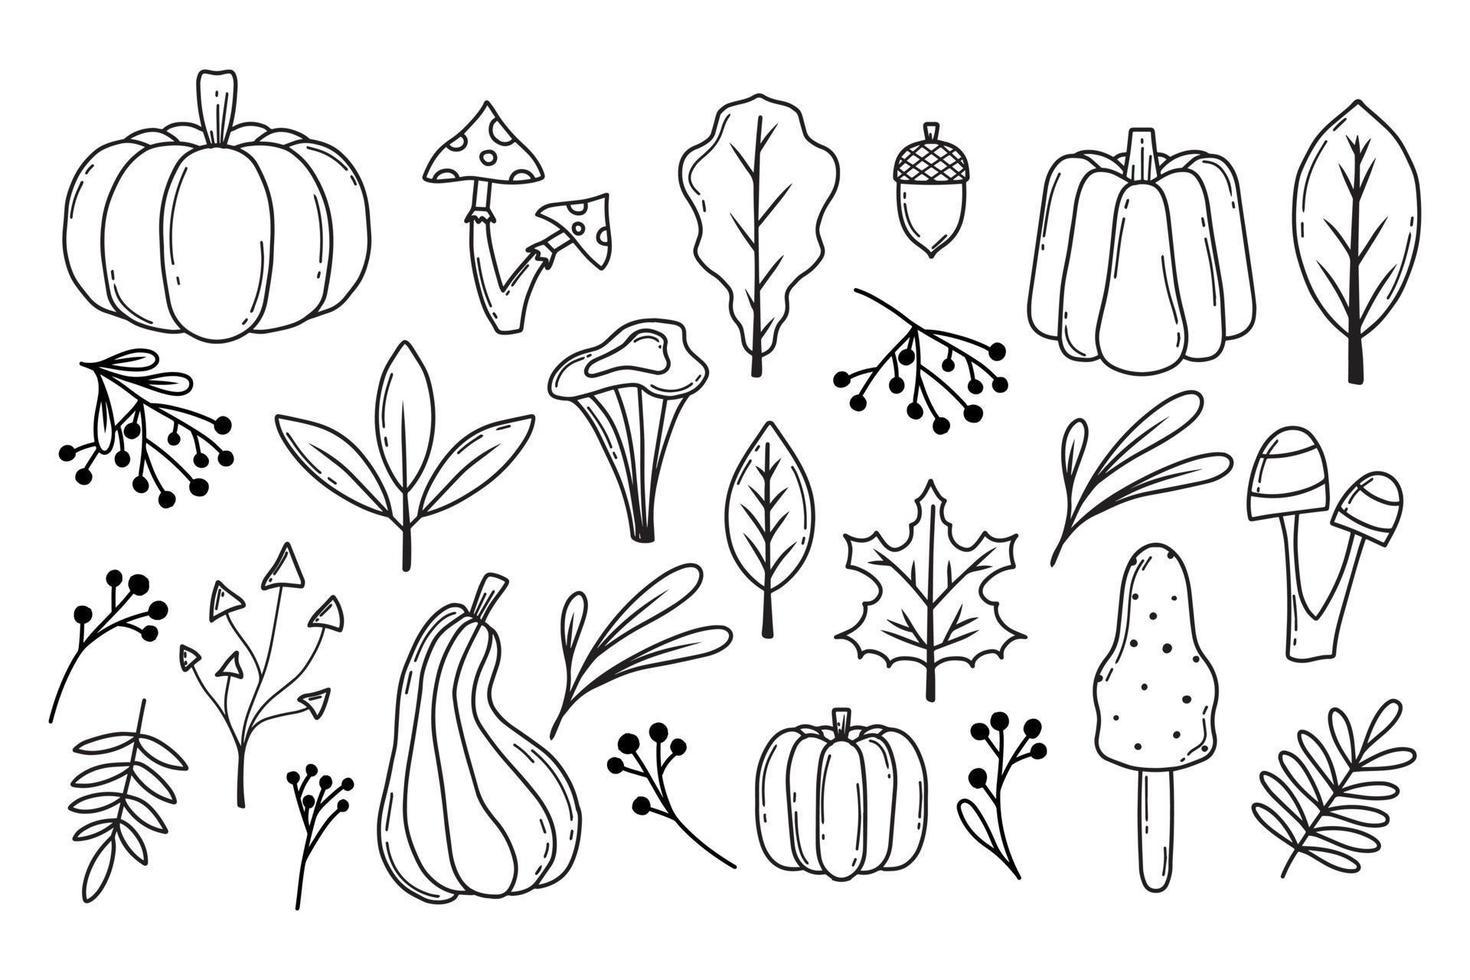 Herbst eingestellt. Herbstkürbisse, Blätter, Beeren und Pilze. Doodle-Stil. Sammlung von Herbstpflanzen. Vektor-Illustration. vektor